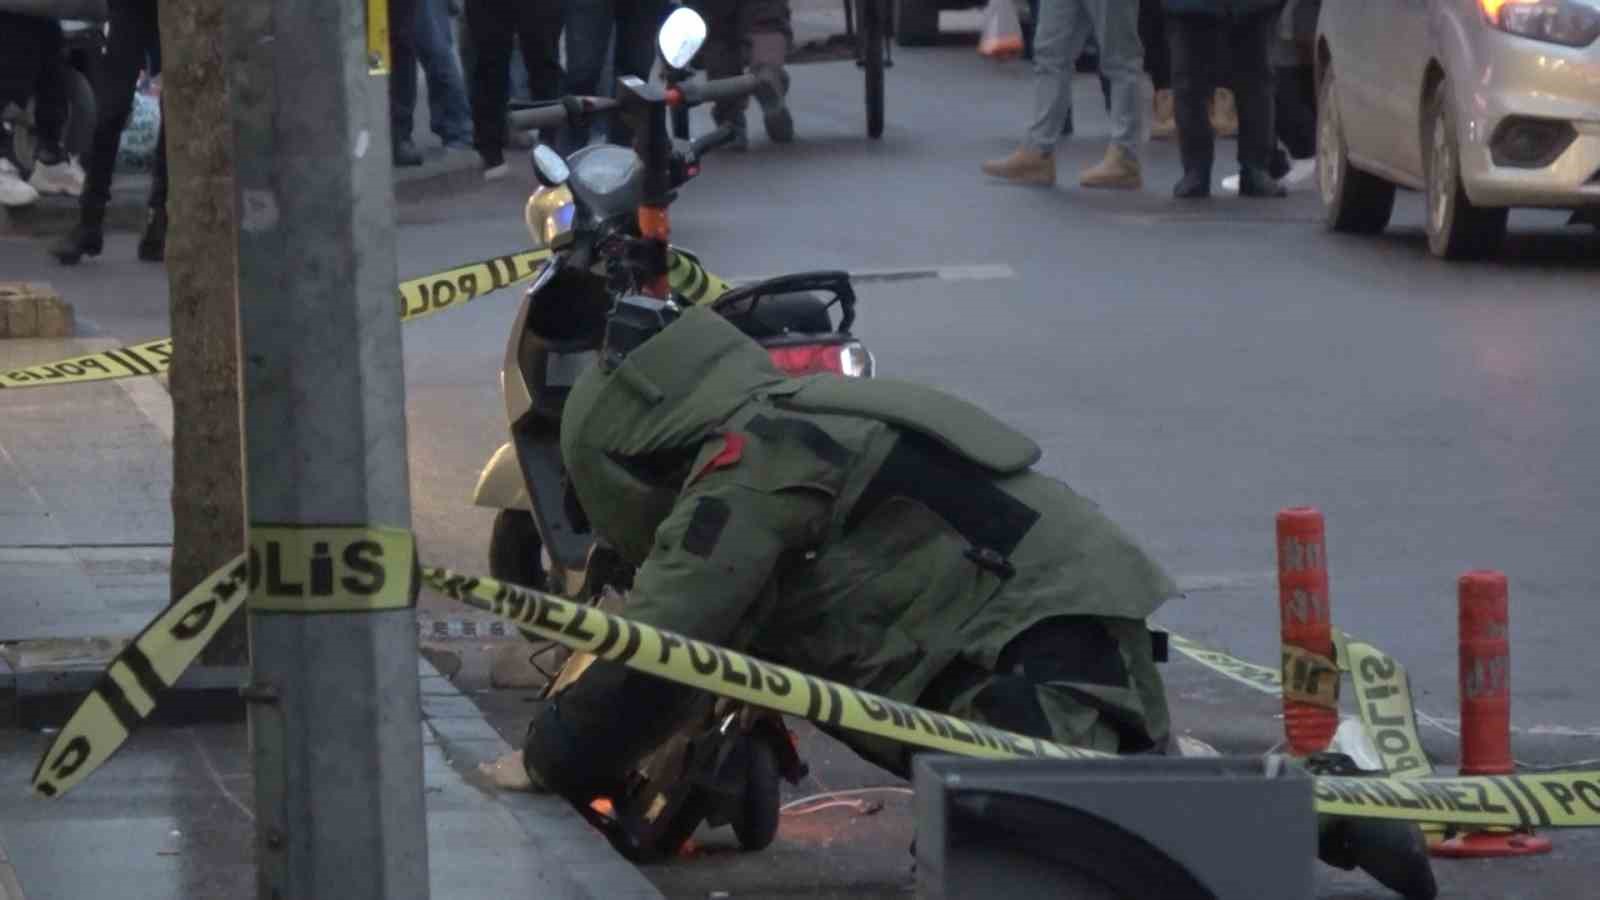 Yalova’da scooter üzerine bırakılan şüpheli çanta, güvenlik güçlerince kontrollü bir şekilde imha edildi.